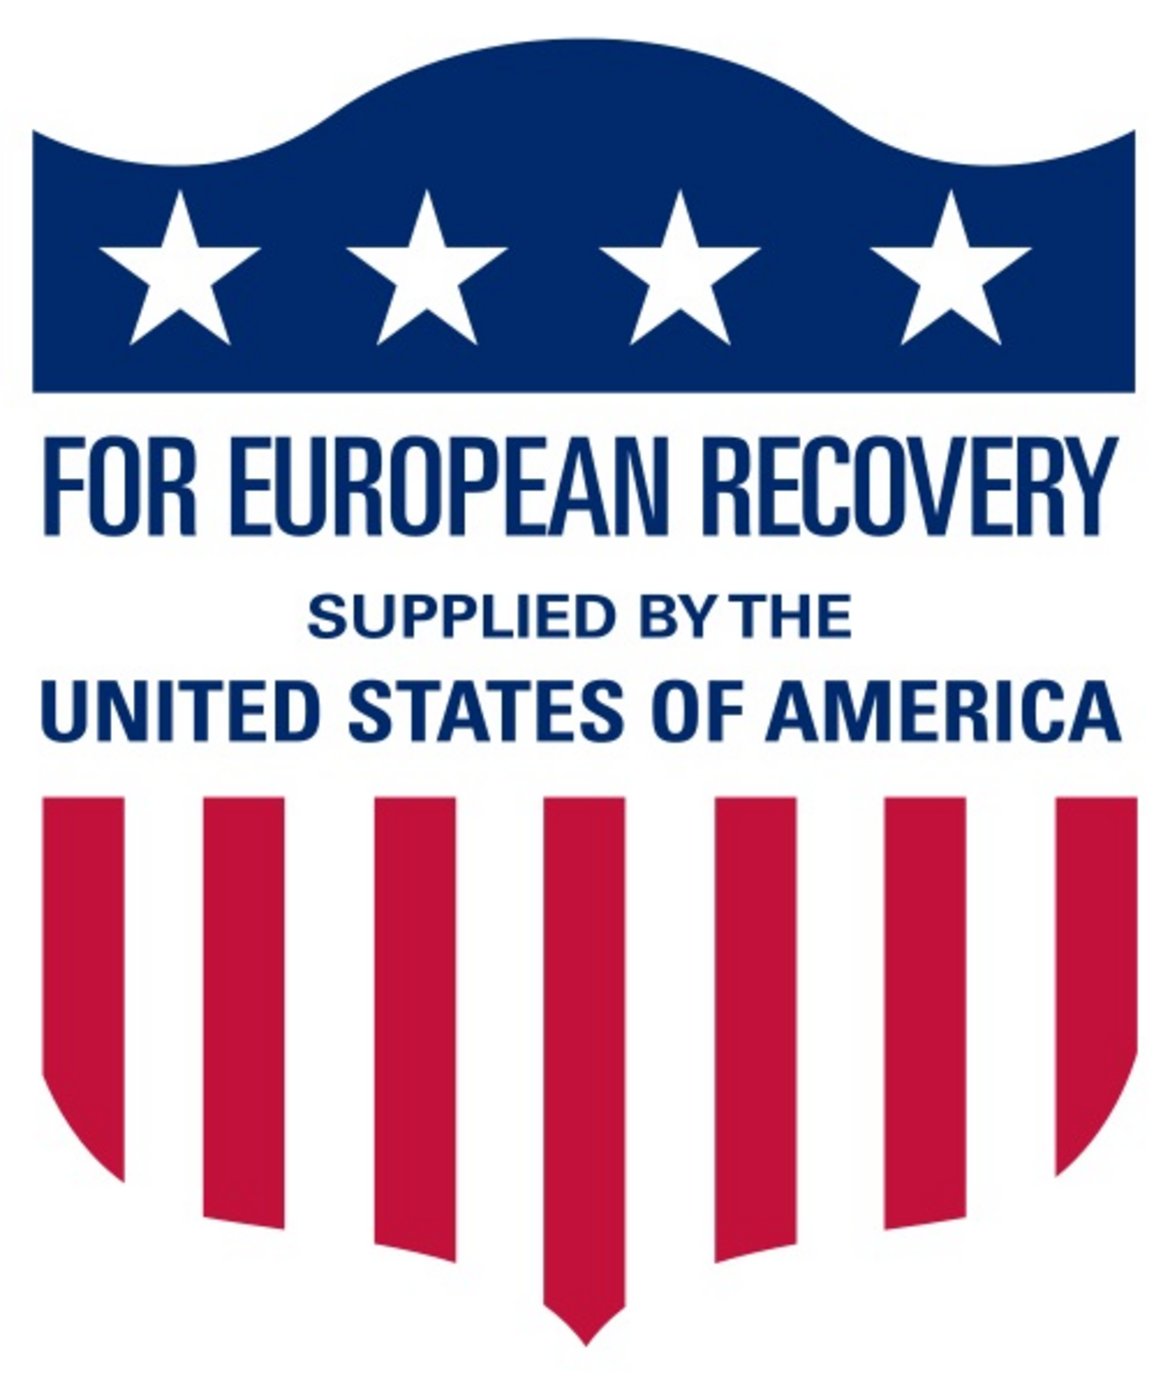 Das European Recovery Program zum Wiederaufbau Europas lief von 1948 bis 1952.